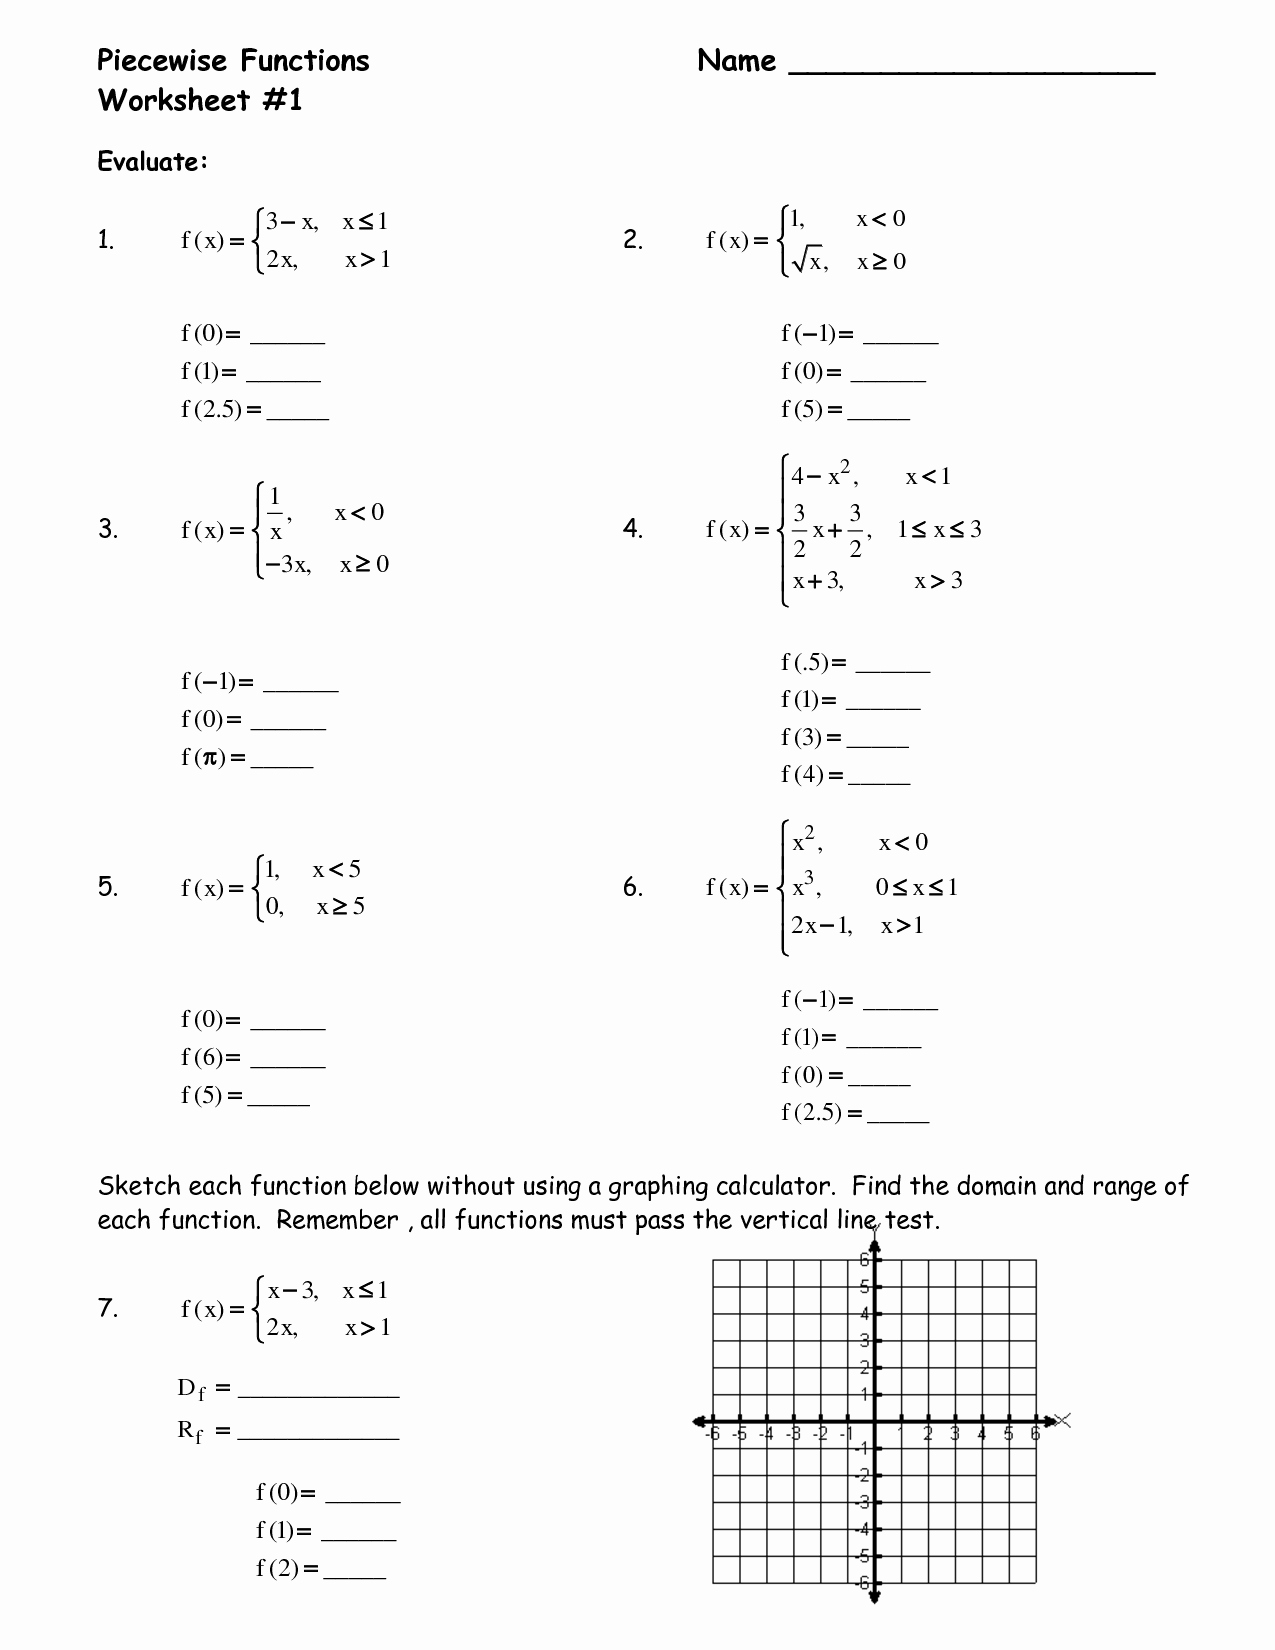 Worksheet Piecewise Functions Algebra 2 Fresh 10 Best Of Algebra 2 Piecewise Function Worksheets